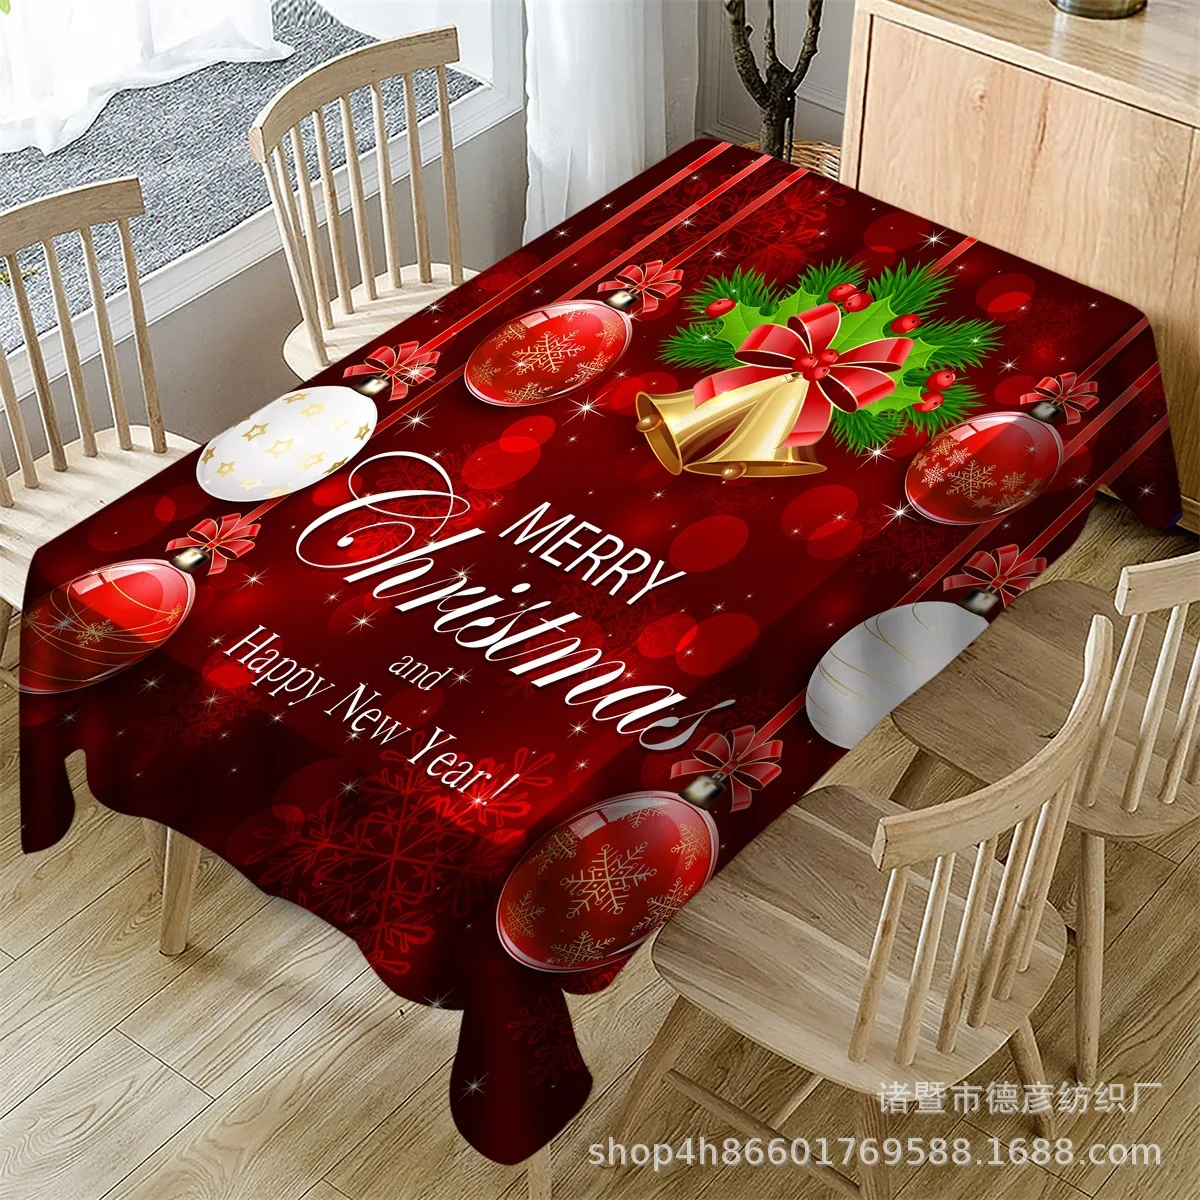 New Christmas Polyester Printed Table Cloth, Tea Table Cloth, Christmas Table Decoration and Dinner christmas tablecloth